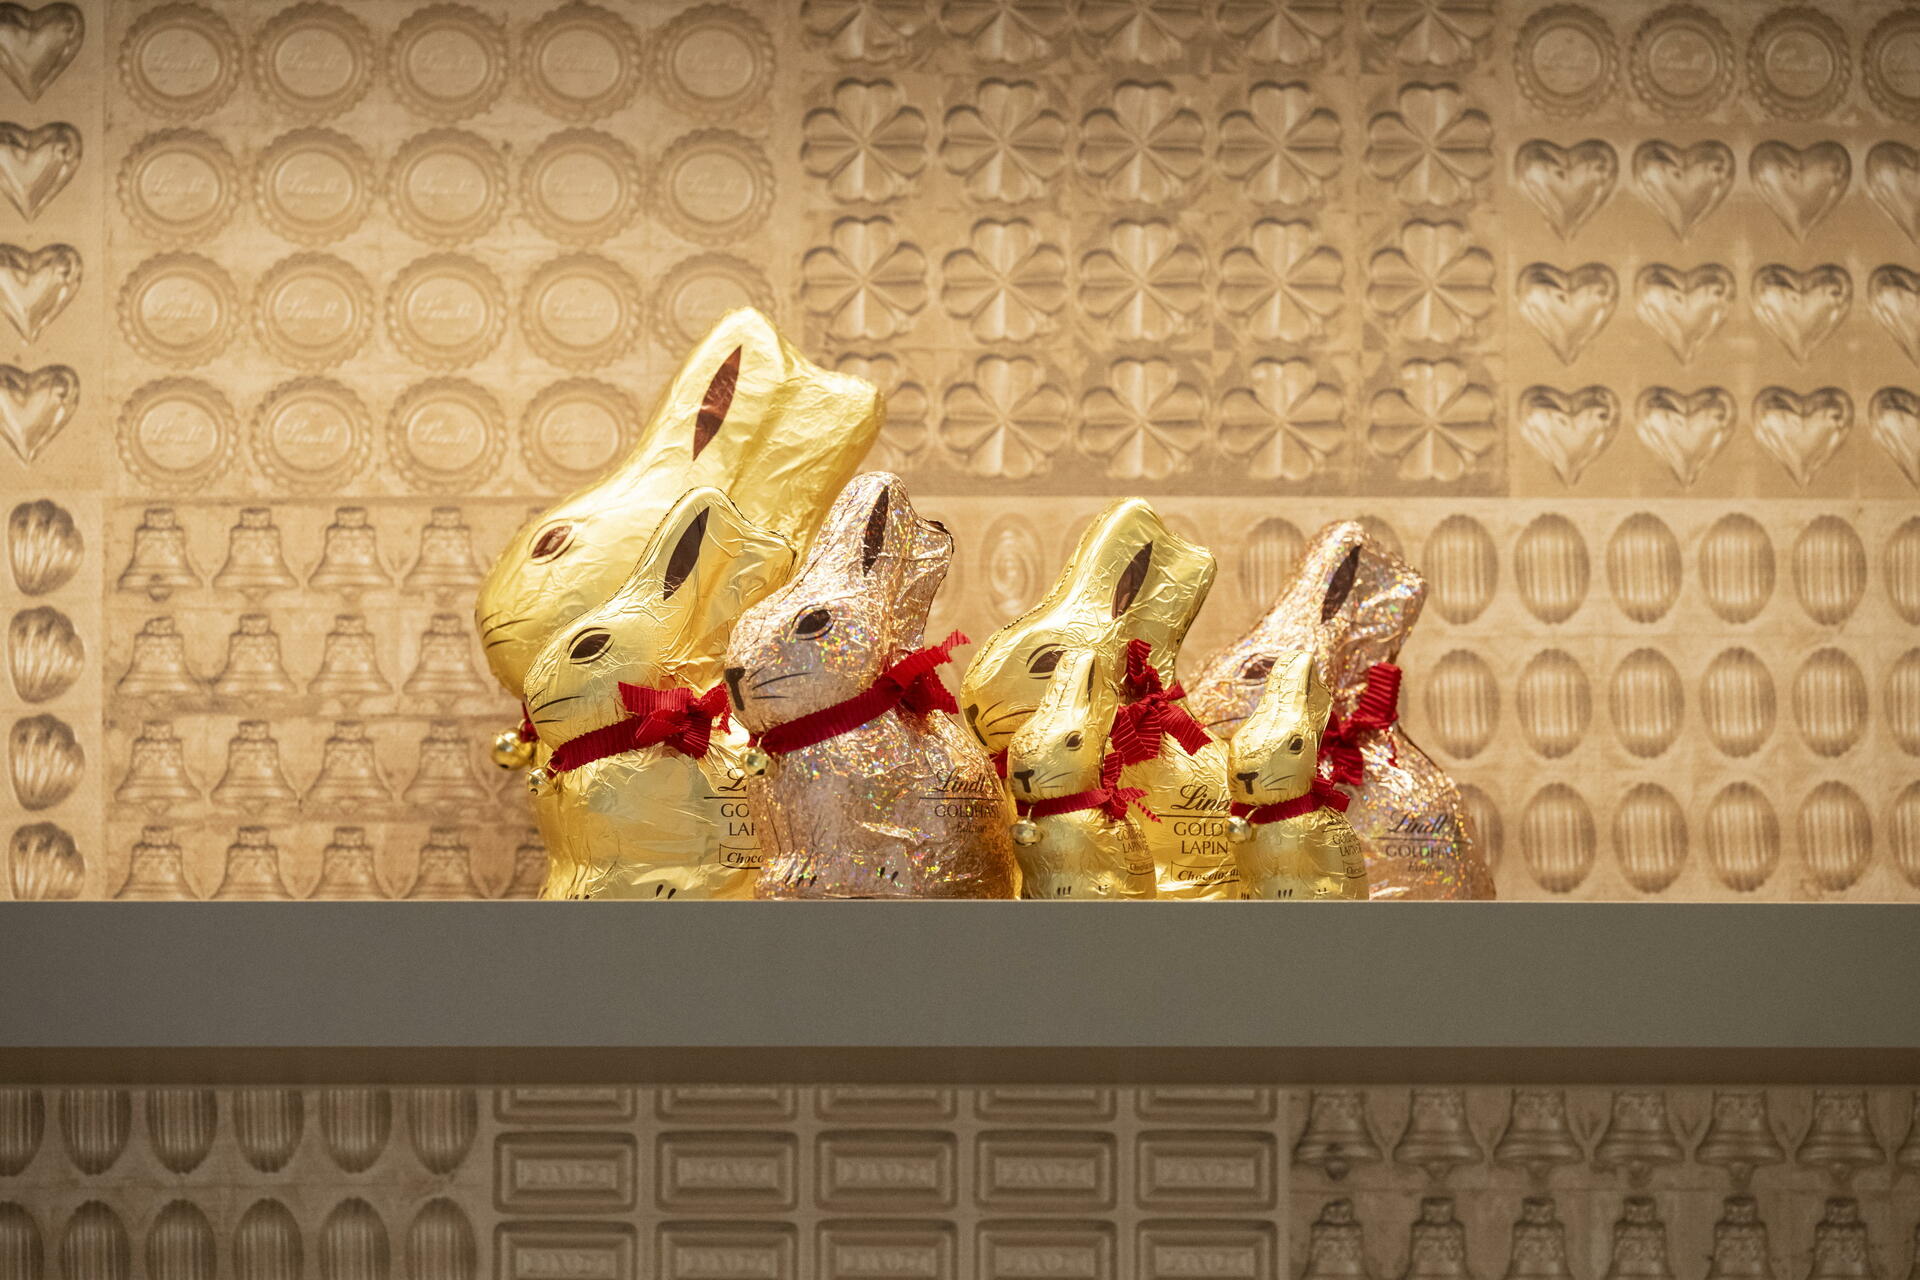 Conejos de oro. (ARCHIVO)